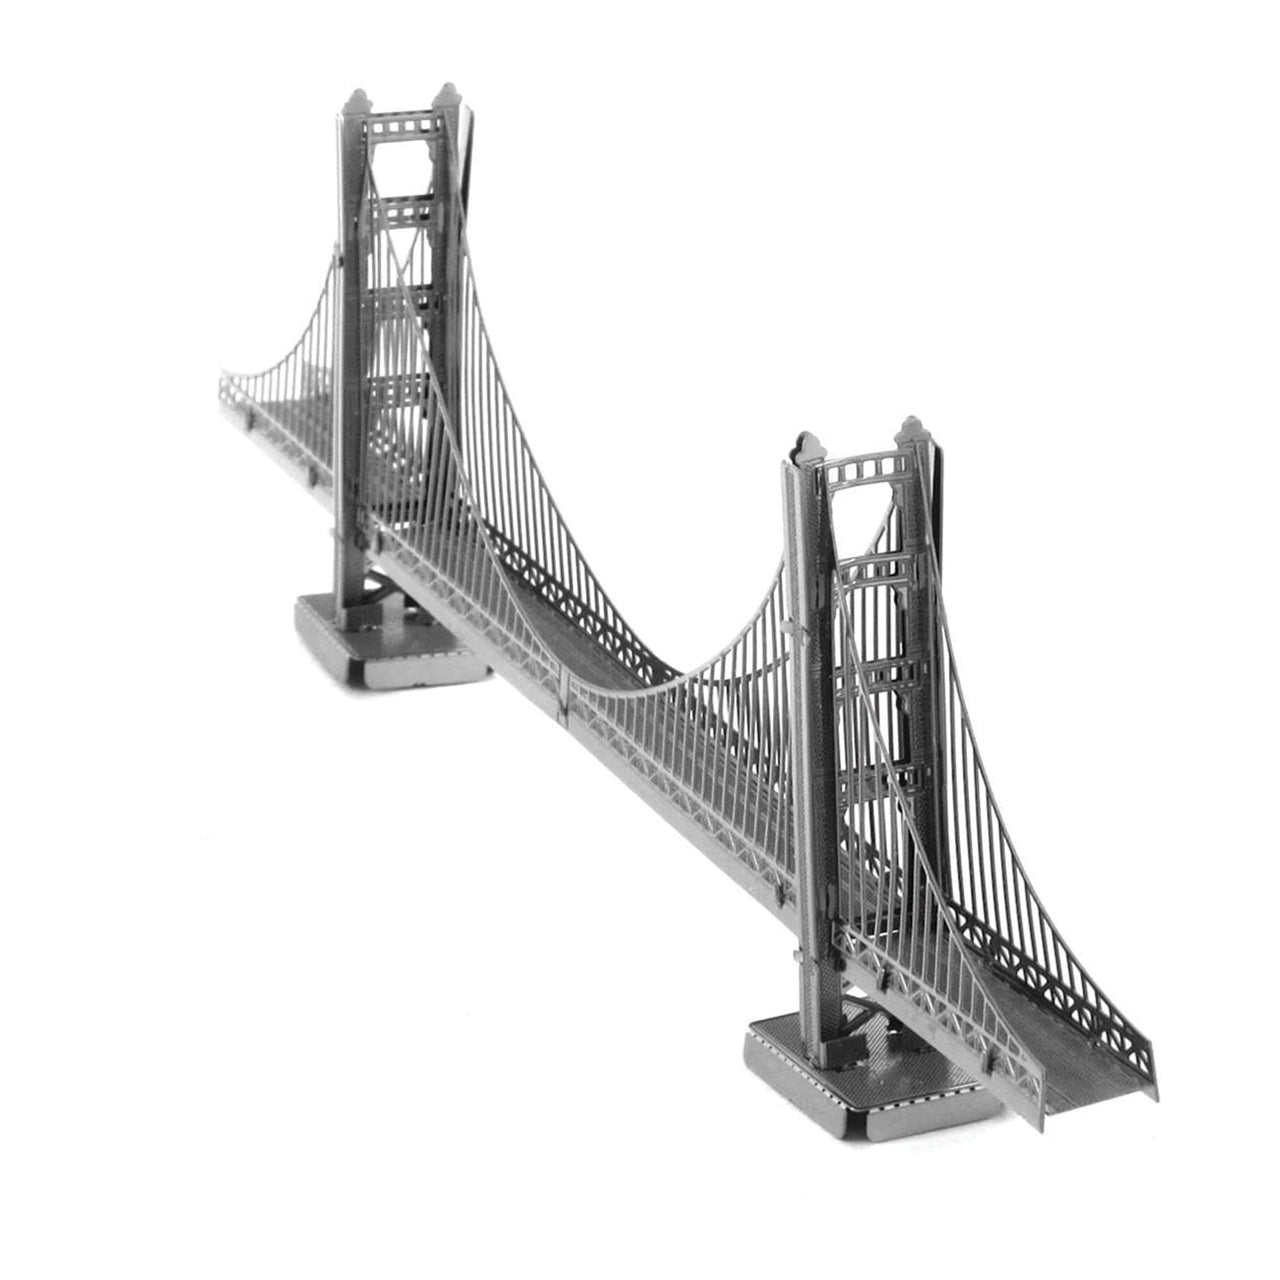 FMW001 Puente Golden Gate De San Francisco (Armable)